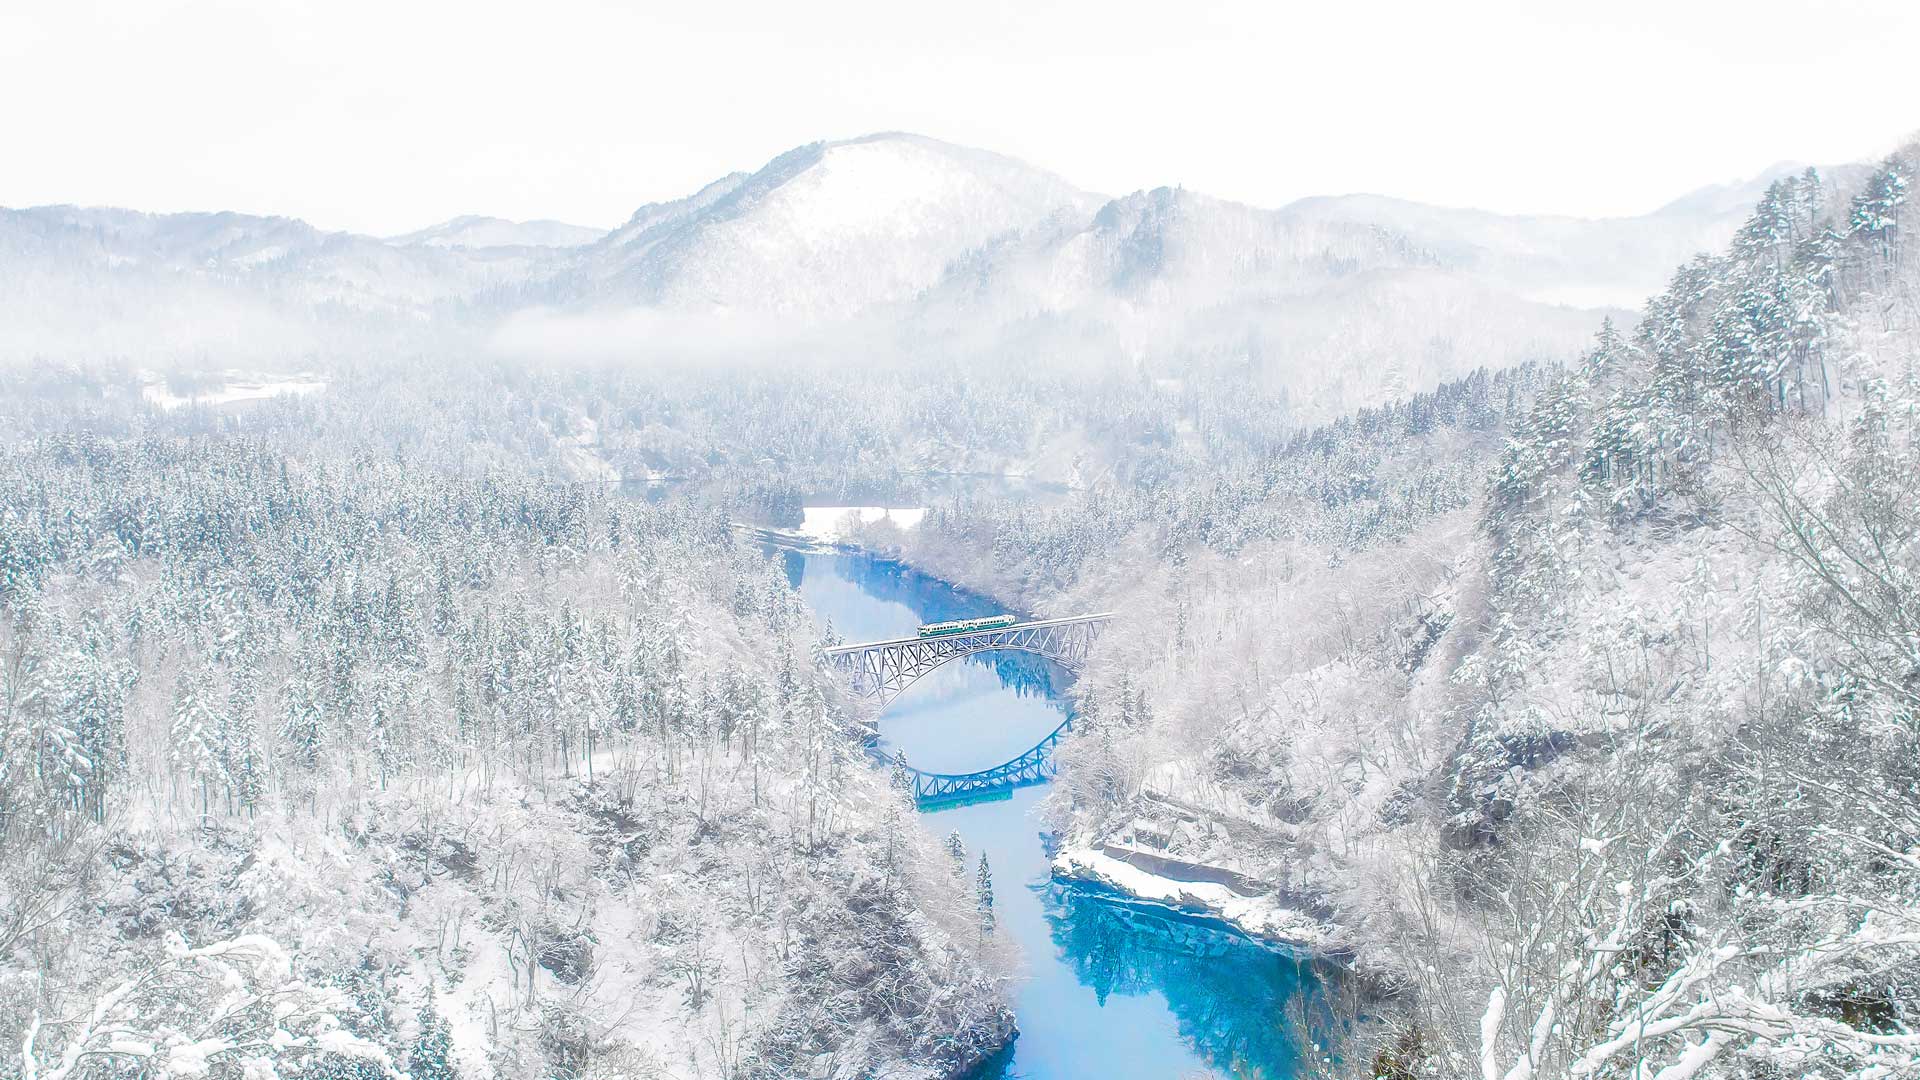 Tadami Winter